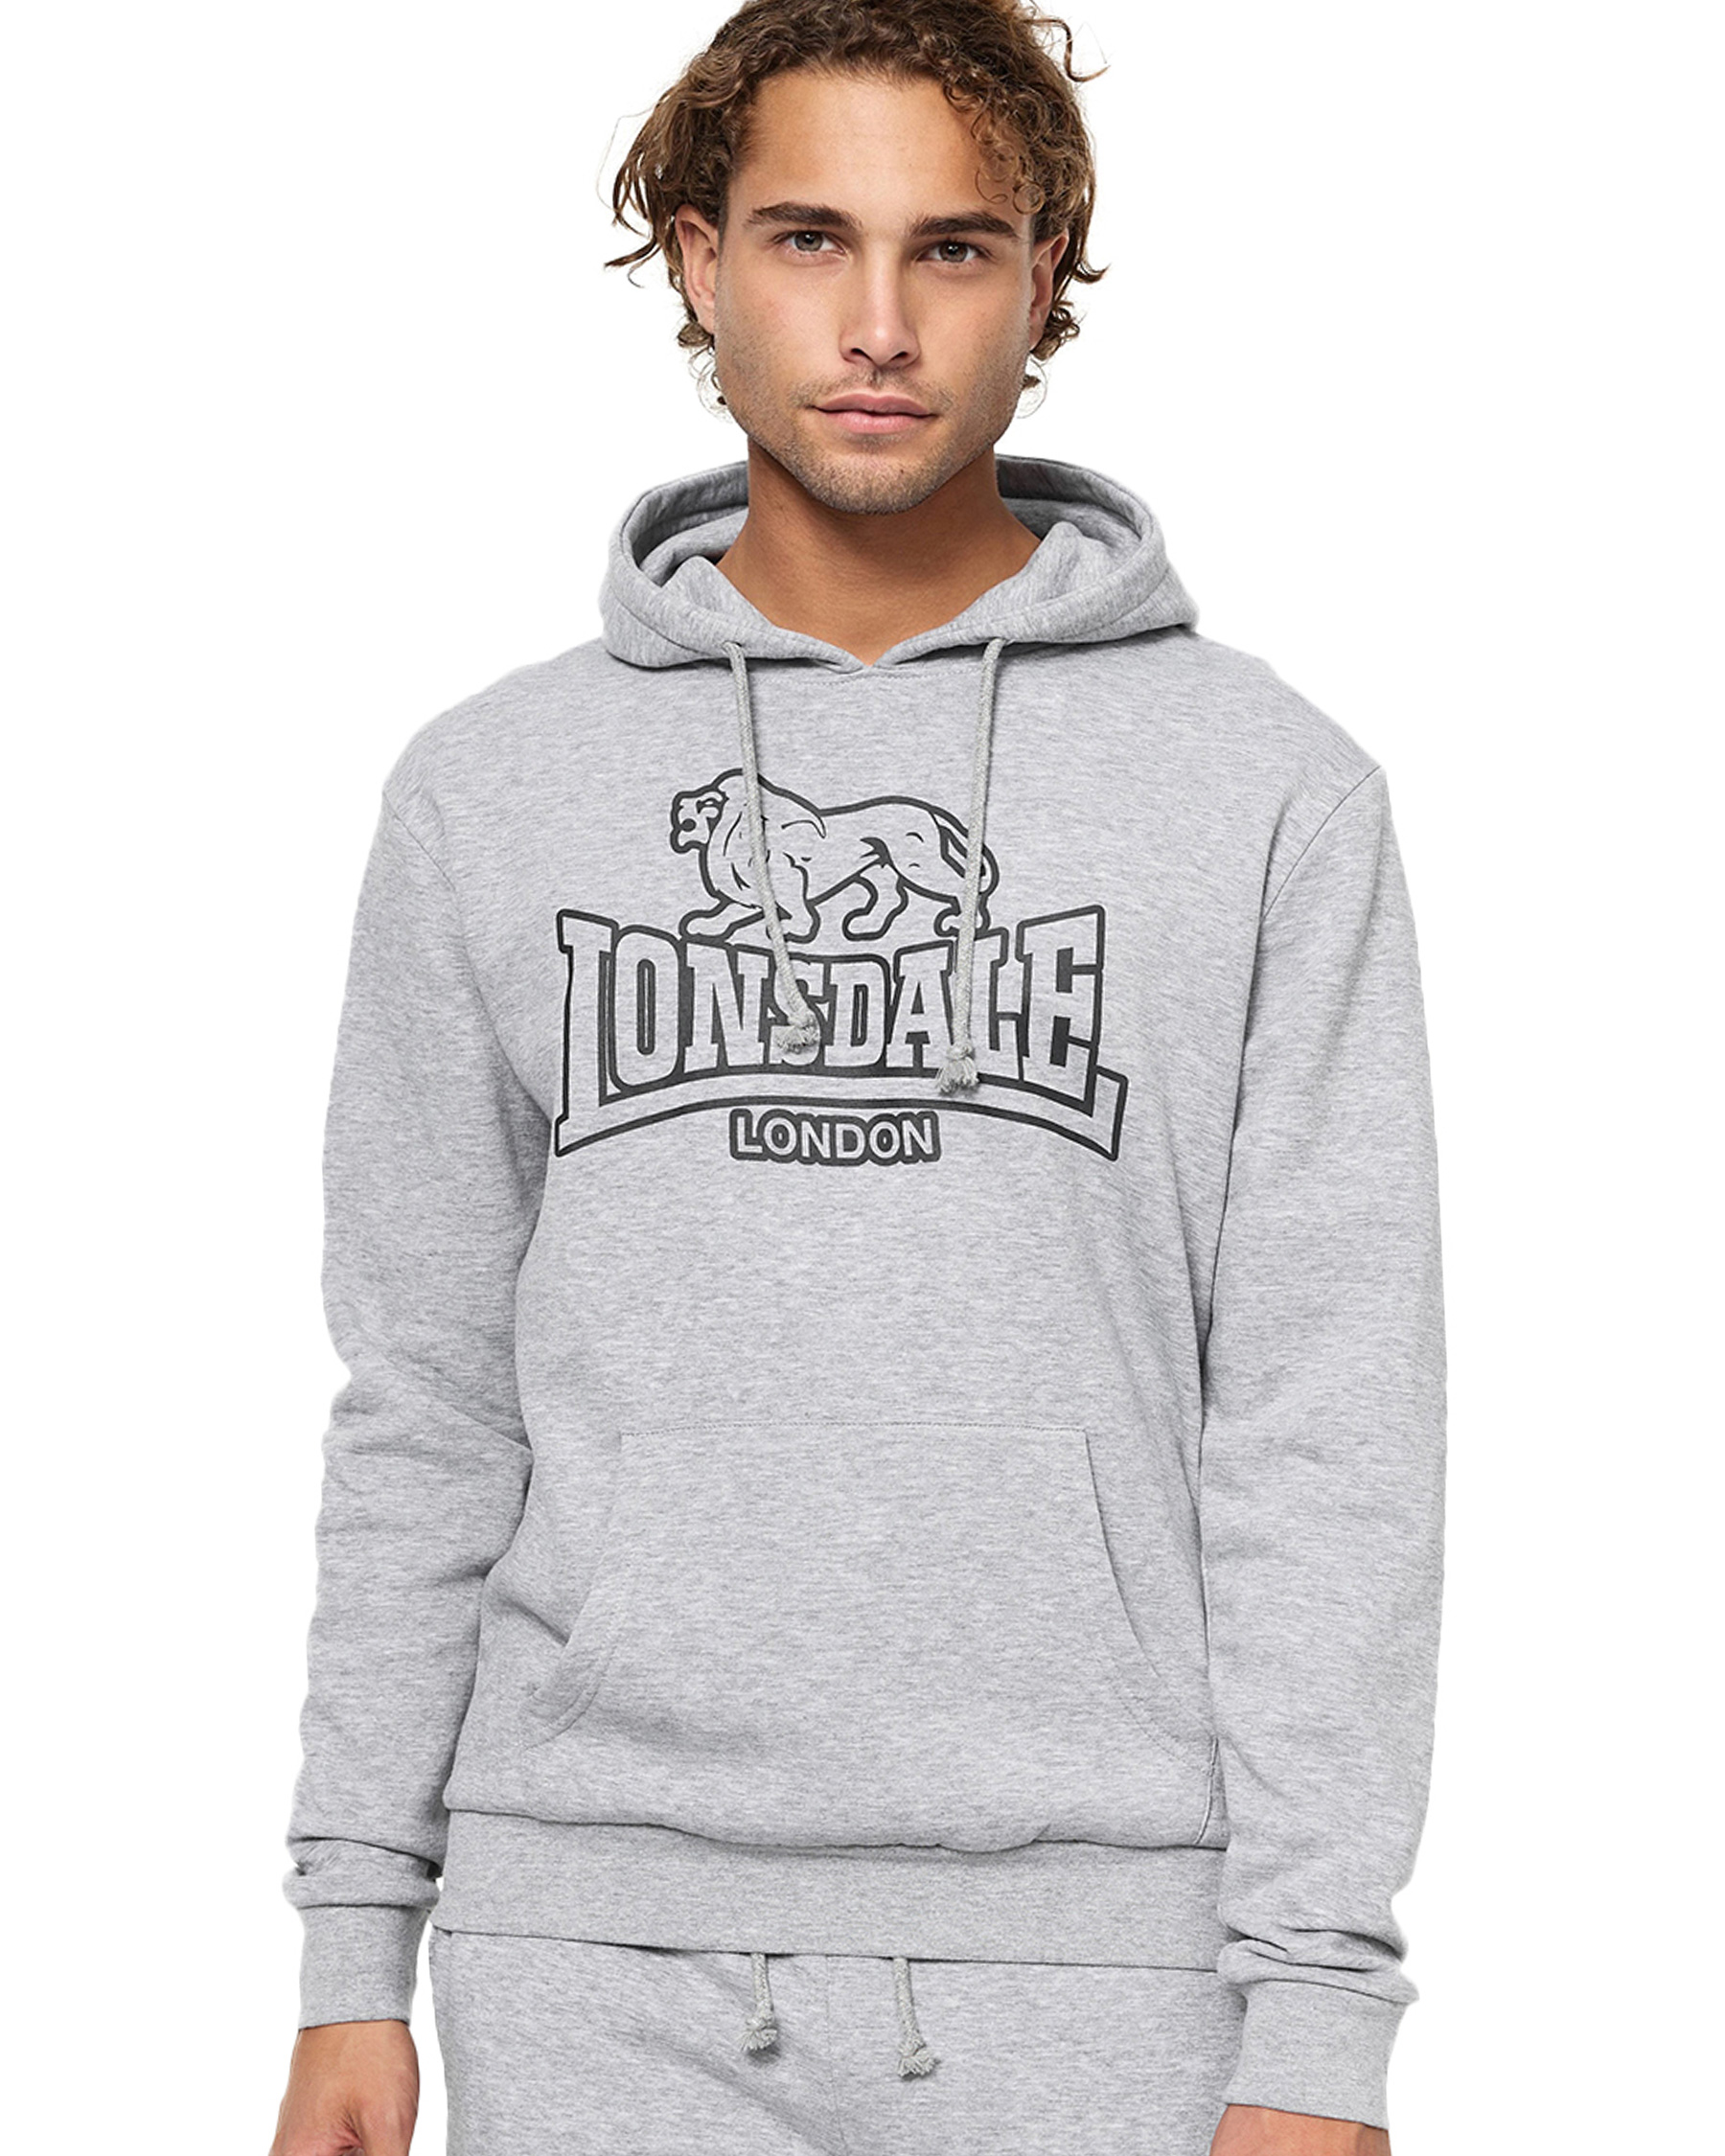 Lonsdale hooded sweatshirt Fochabers